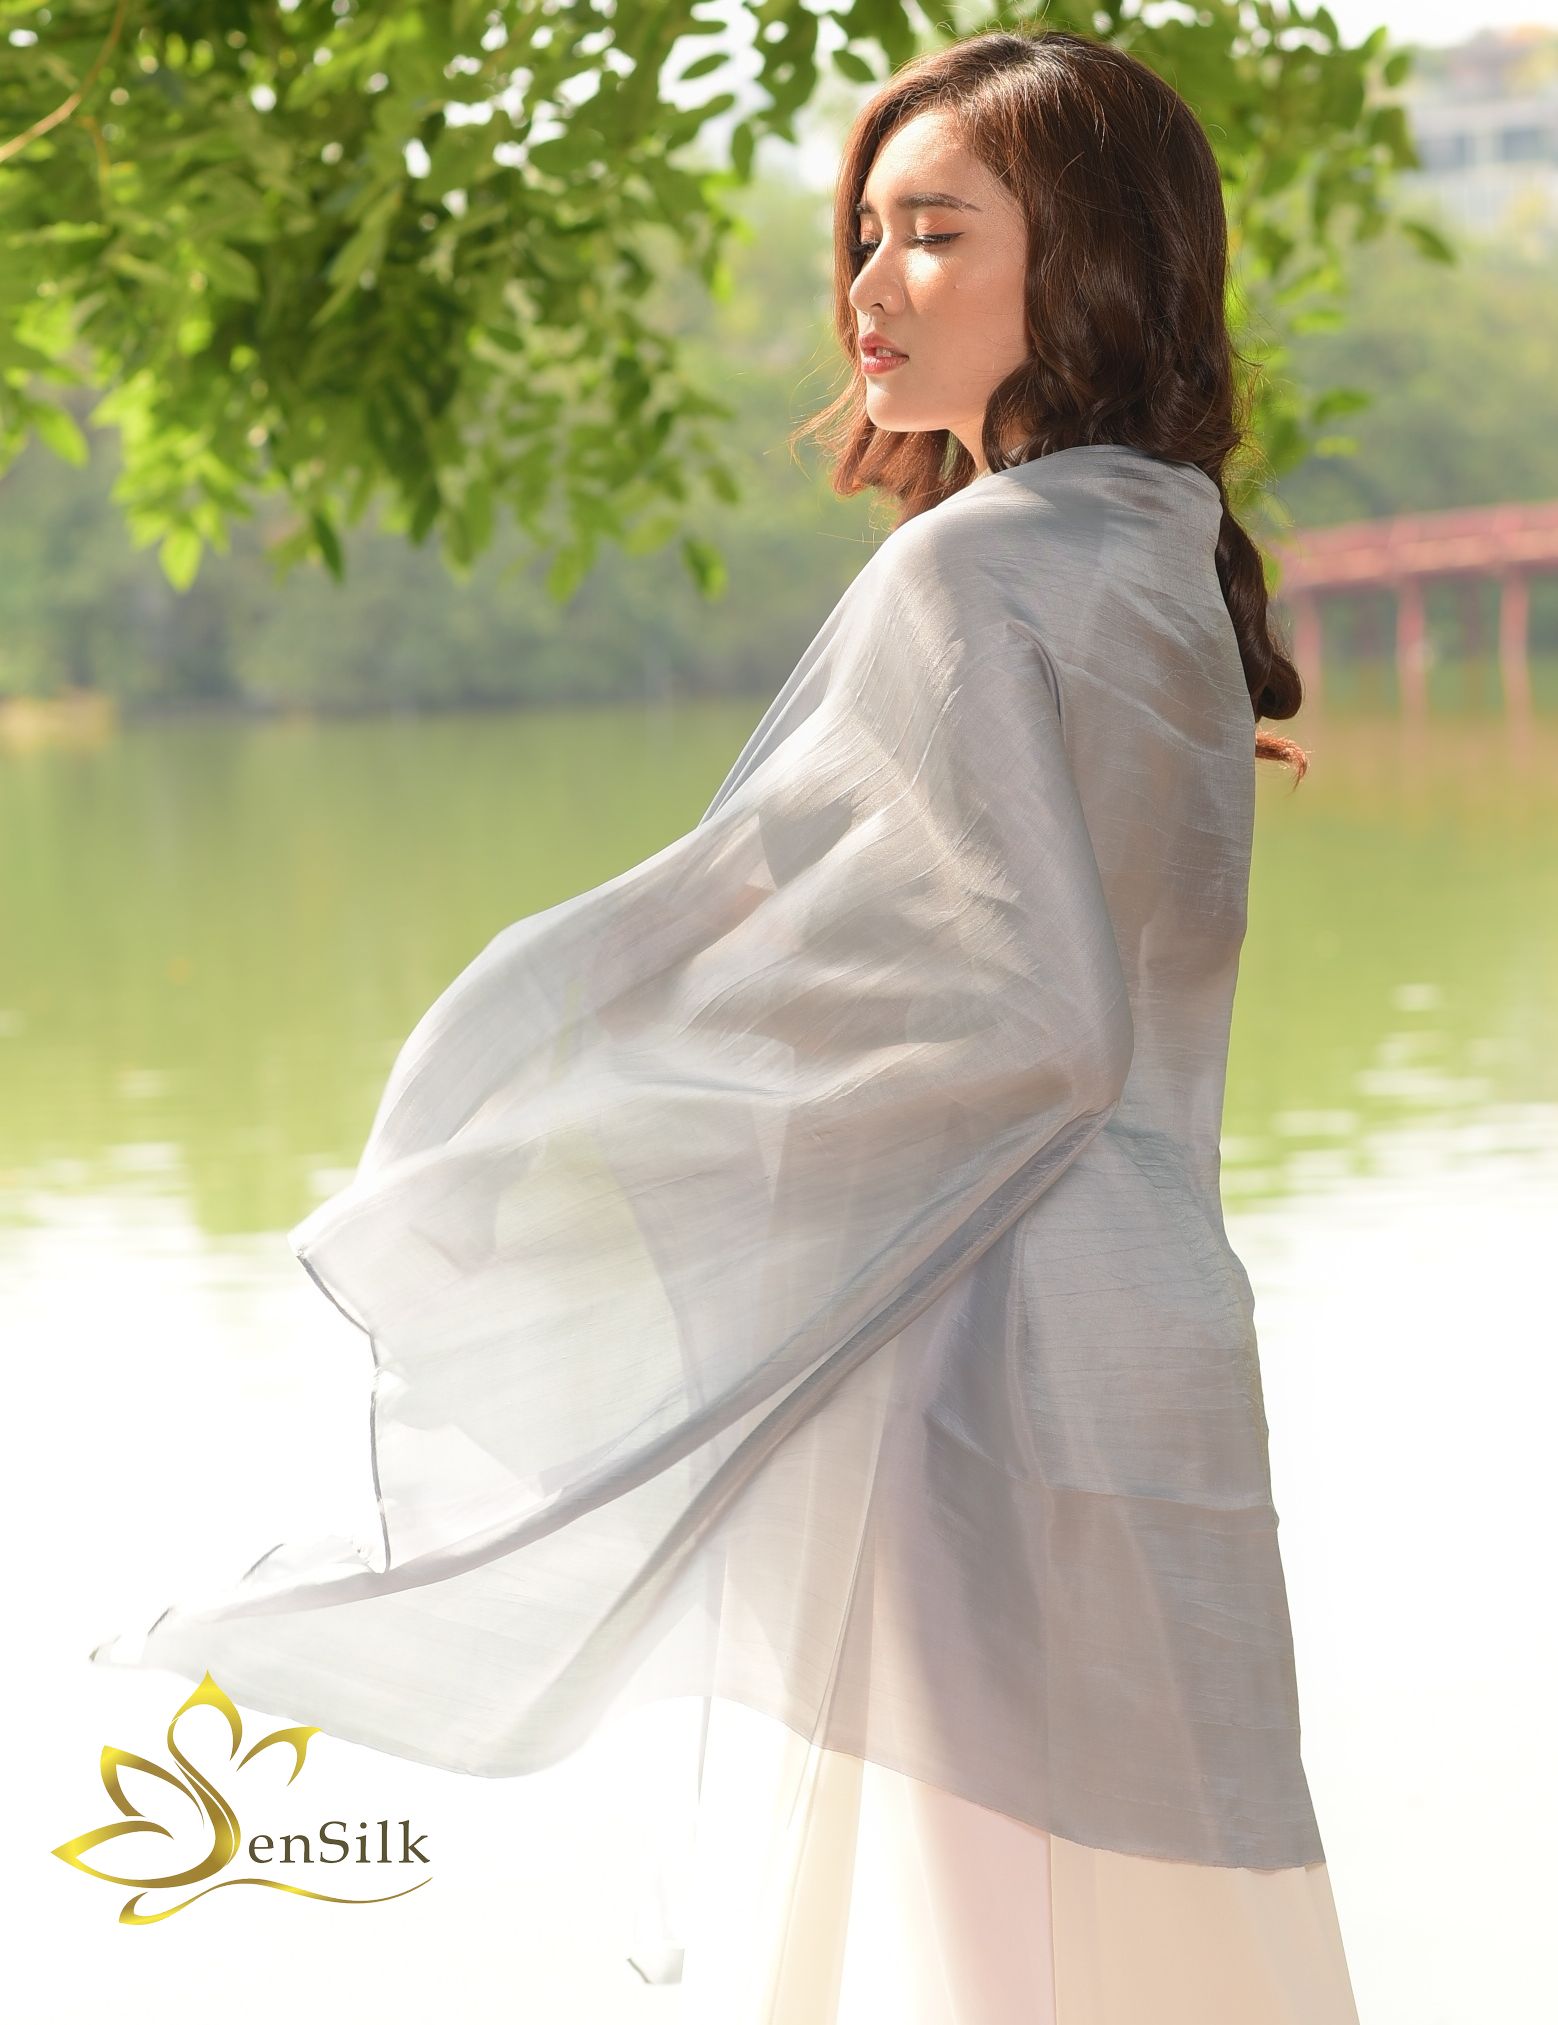 Khăn Lụa Truyền Thống SenSilk - Silk Shawl 100% Pure Silk - Quà Tặng Khăn Lụa Cao Cấp - Silk Gift for Men Women